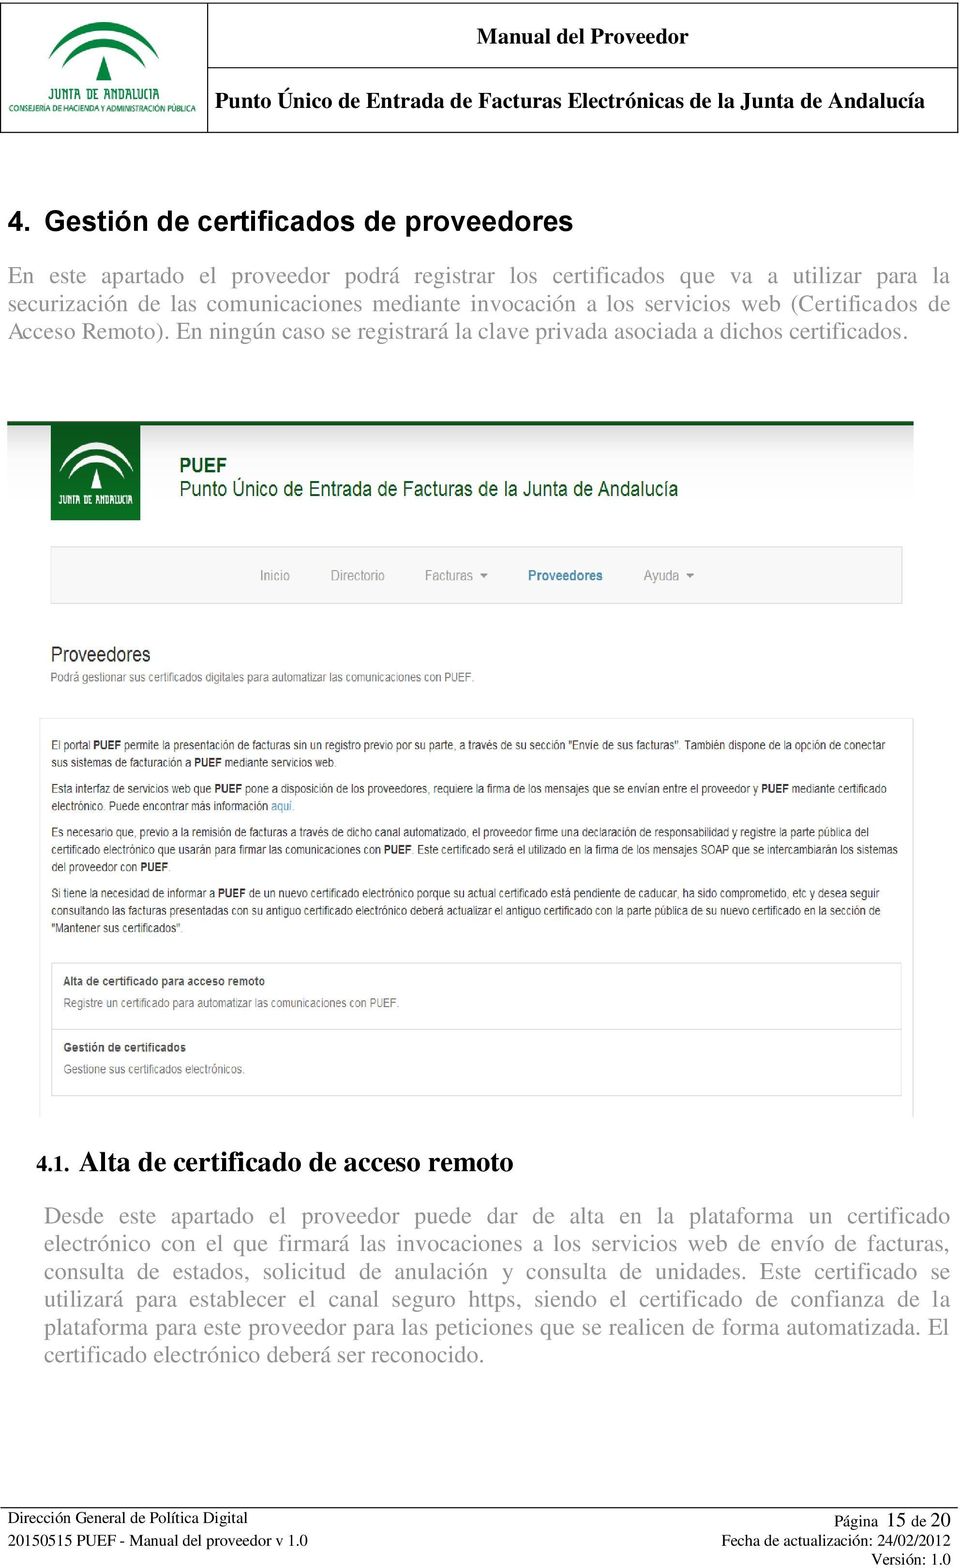 Alta de certificado de acceso remoto Desde este apartado el proveedor puede dar de alta en la plataforma un certificado electrónico con el que firmará las invocaciones a los servicios web de envío de